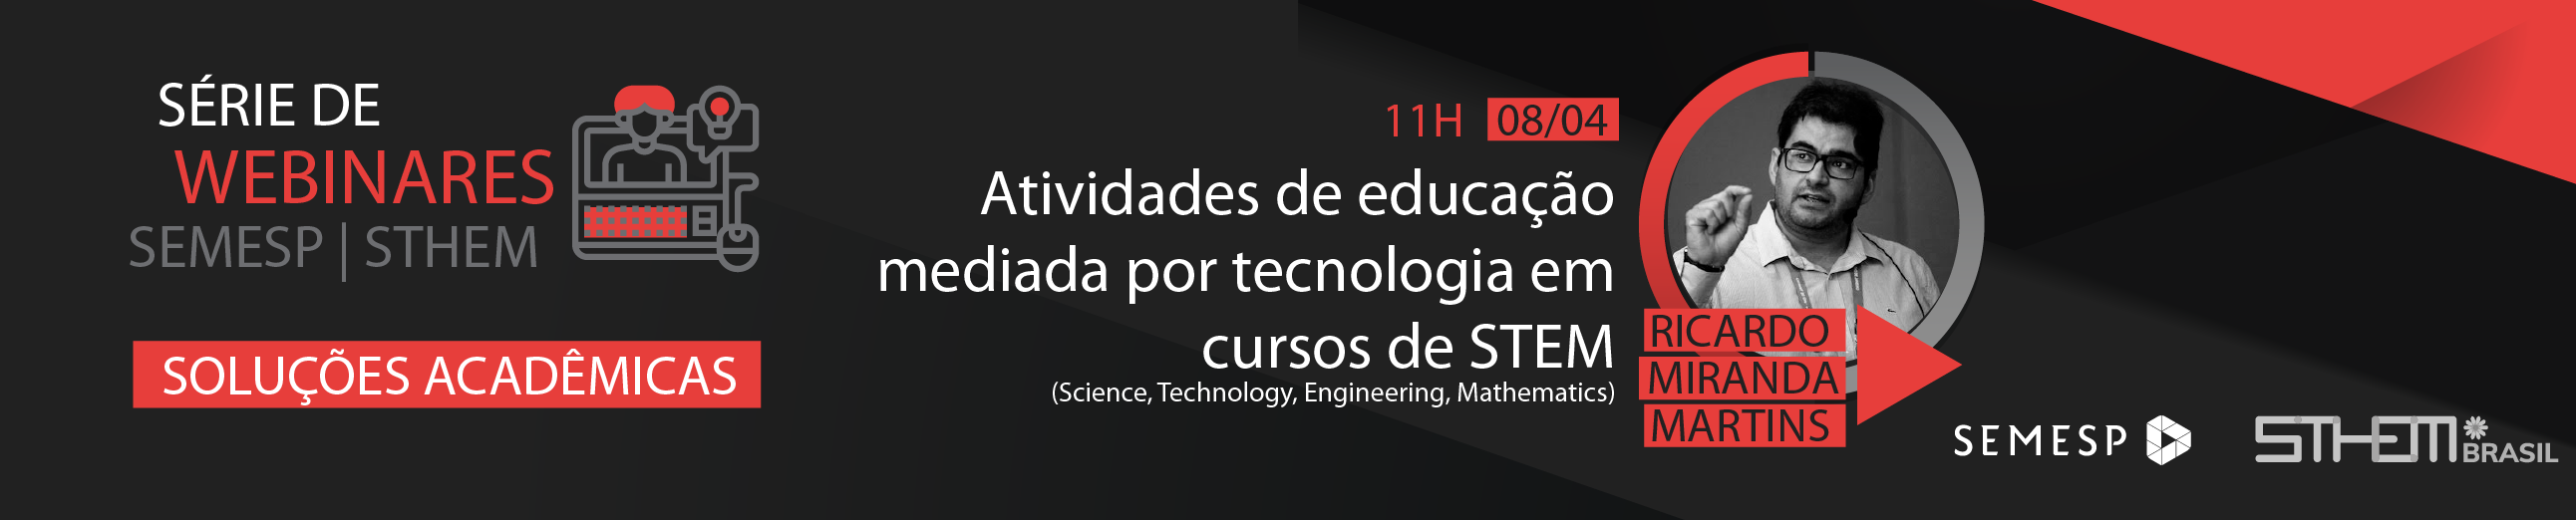 Série de Webinares Semesp | Atividades de educação mediada por tecnologia em cursos de STEM (Science, Technology, Engineering, Mathematics)